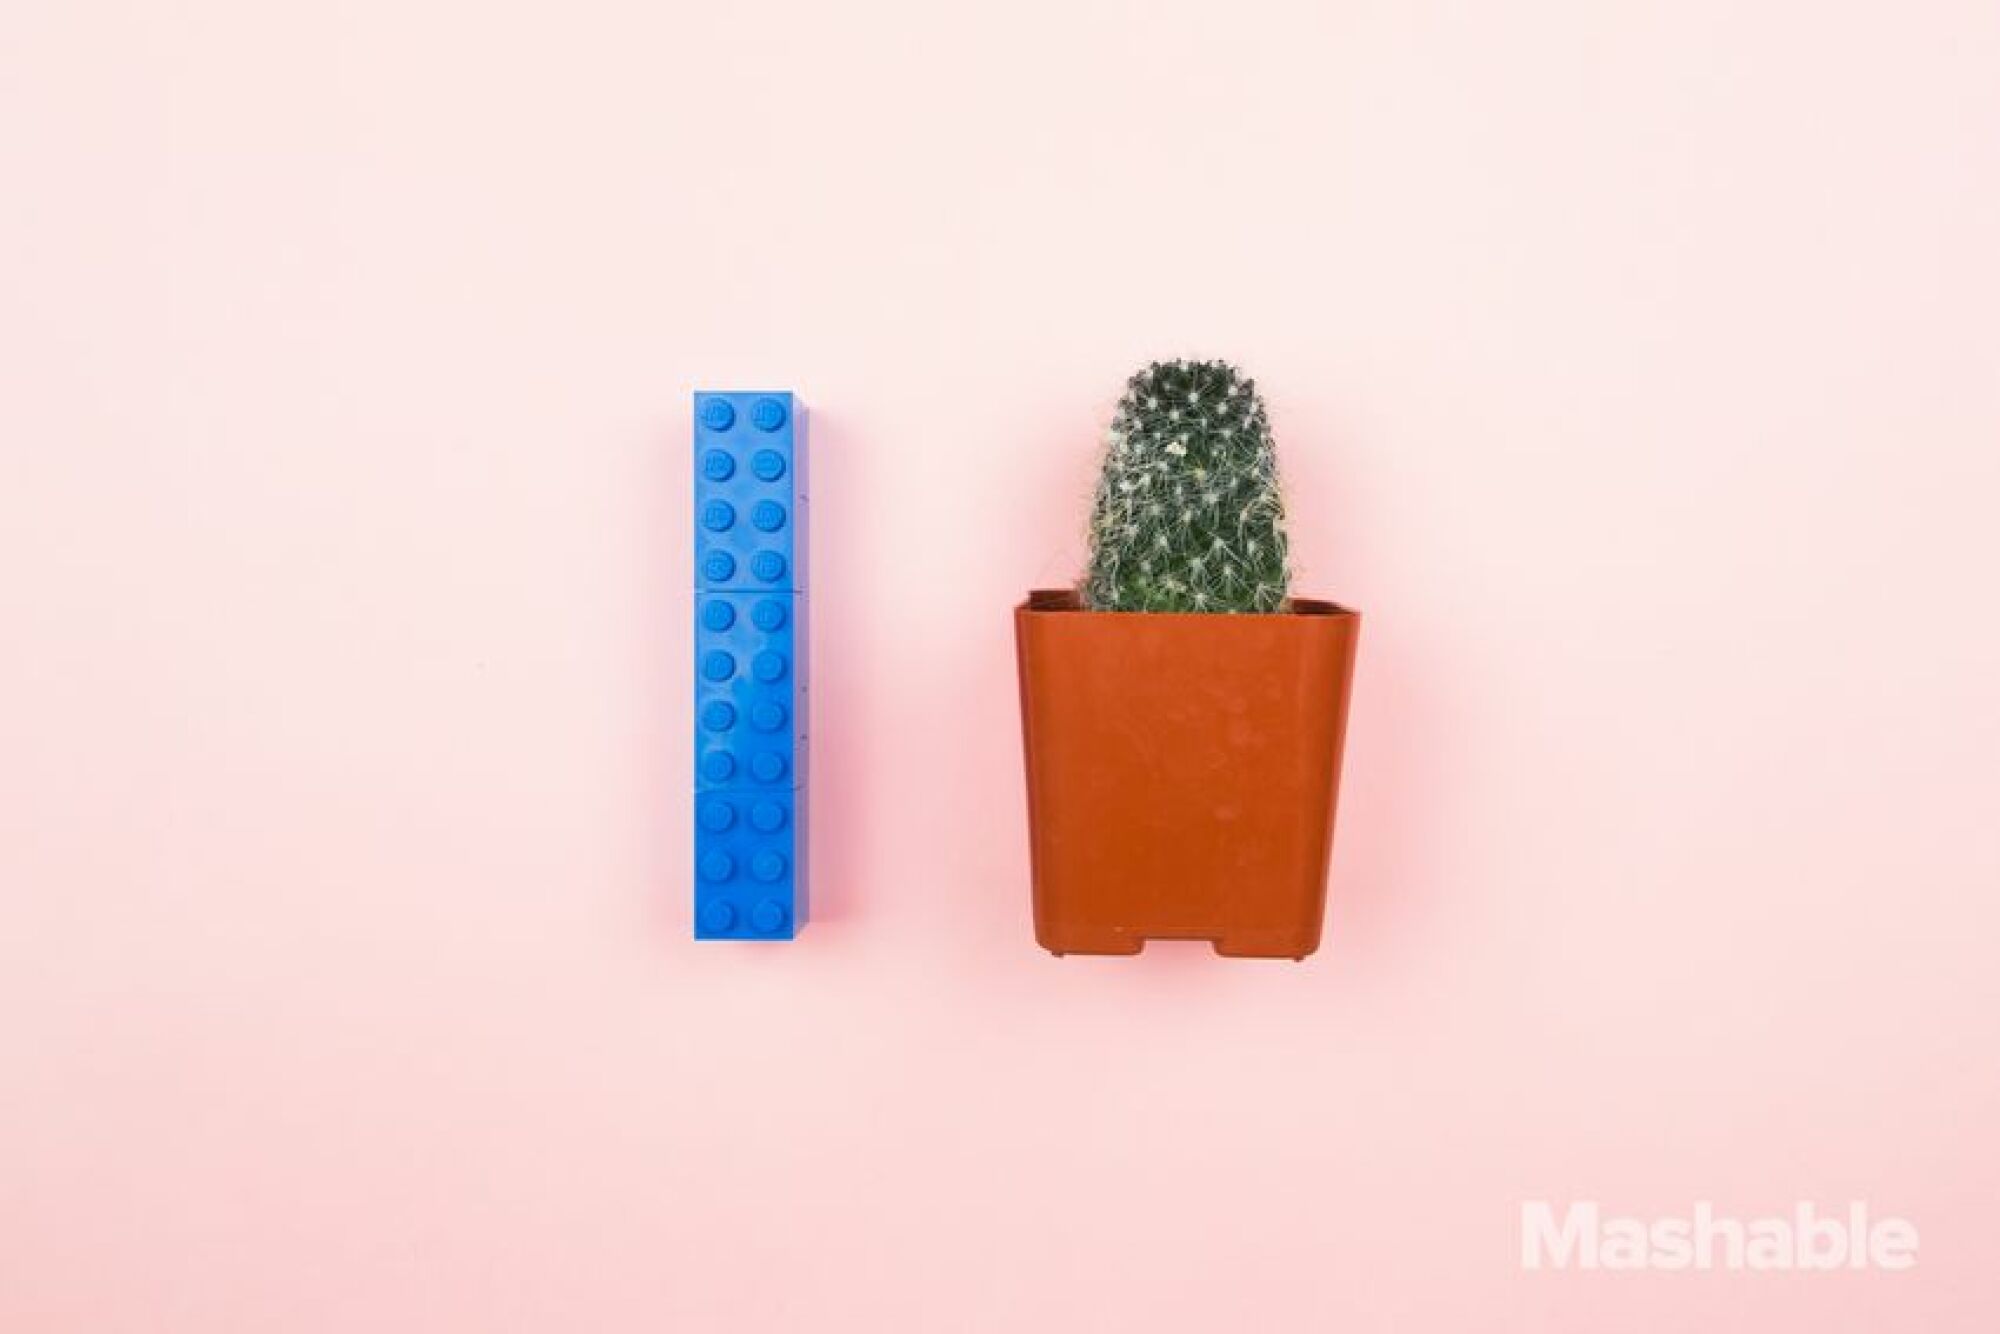 Le Lego bleu à côté d'un petit cactus.